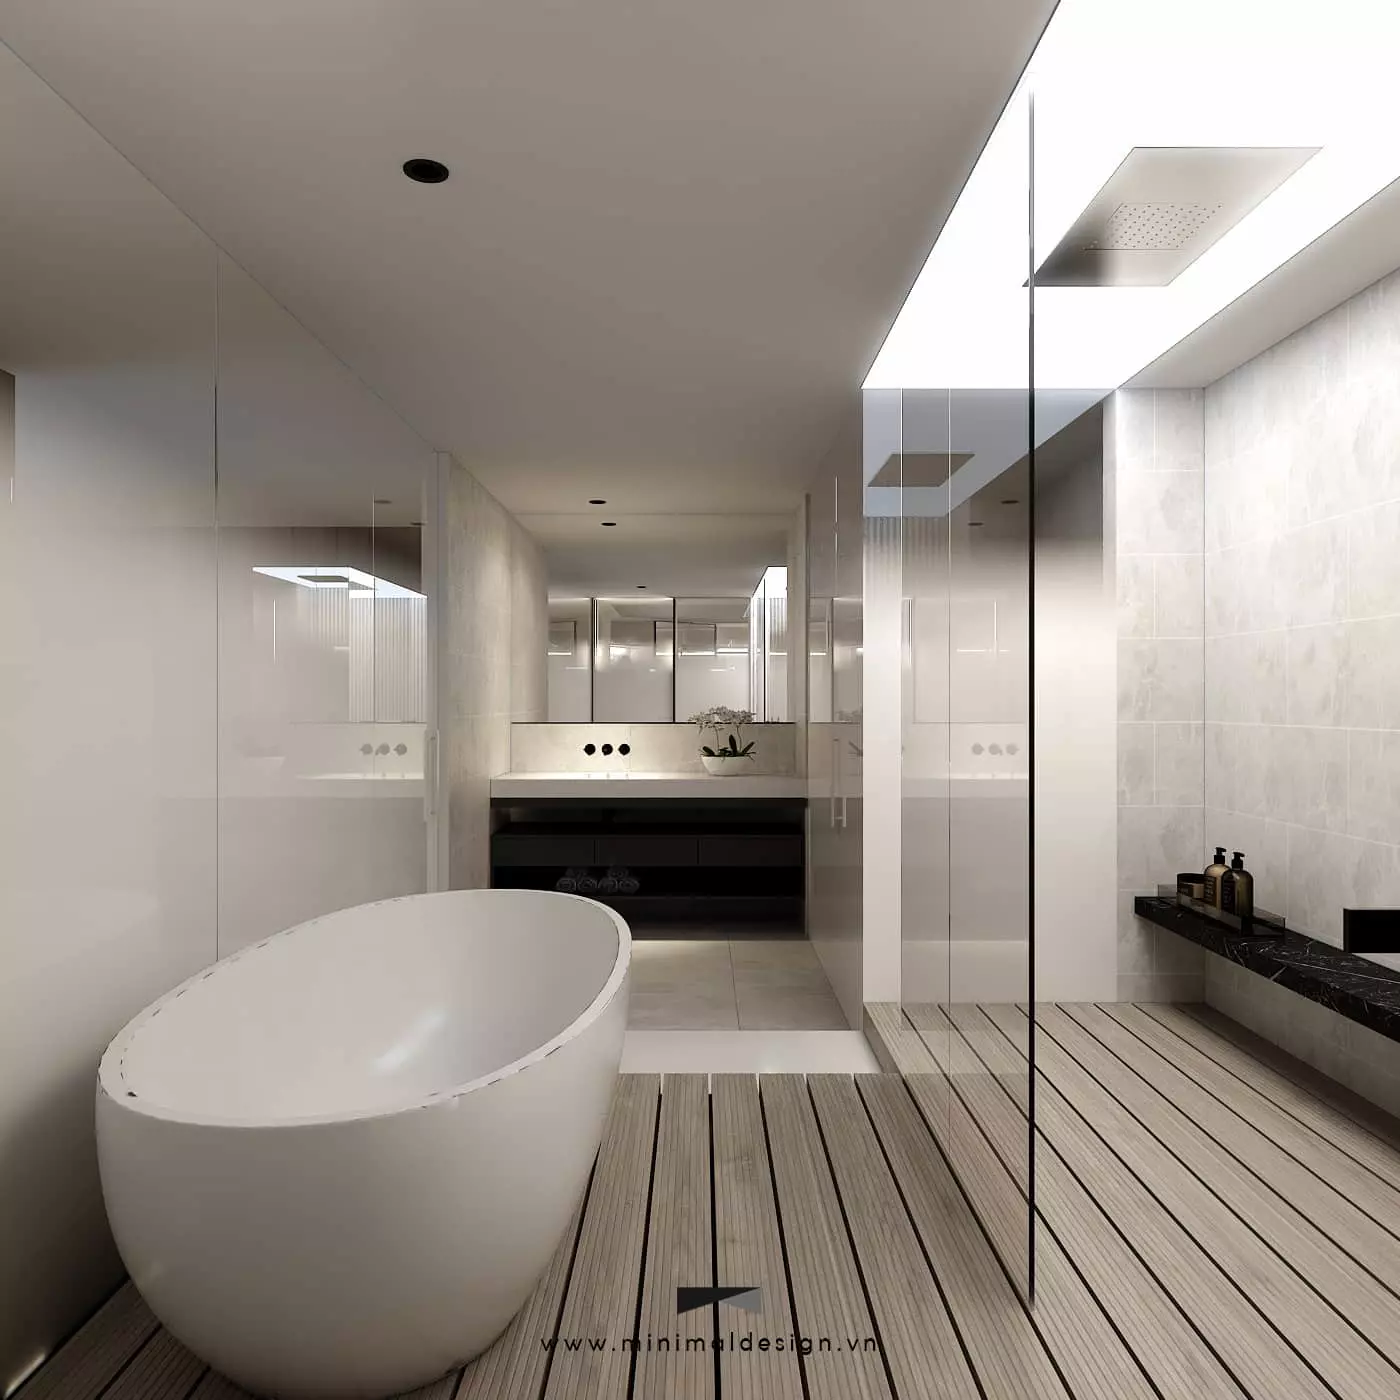 Thiết kế phòng tắm nhỏ tối giản và hiện đại cùng các giải pháp sau sẽ giúp bạn nâng cao chất lượng không gian sống nhưng vẫn đảm bảo thẩm mỹ.